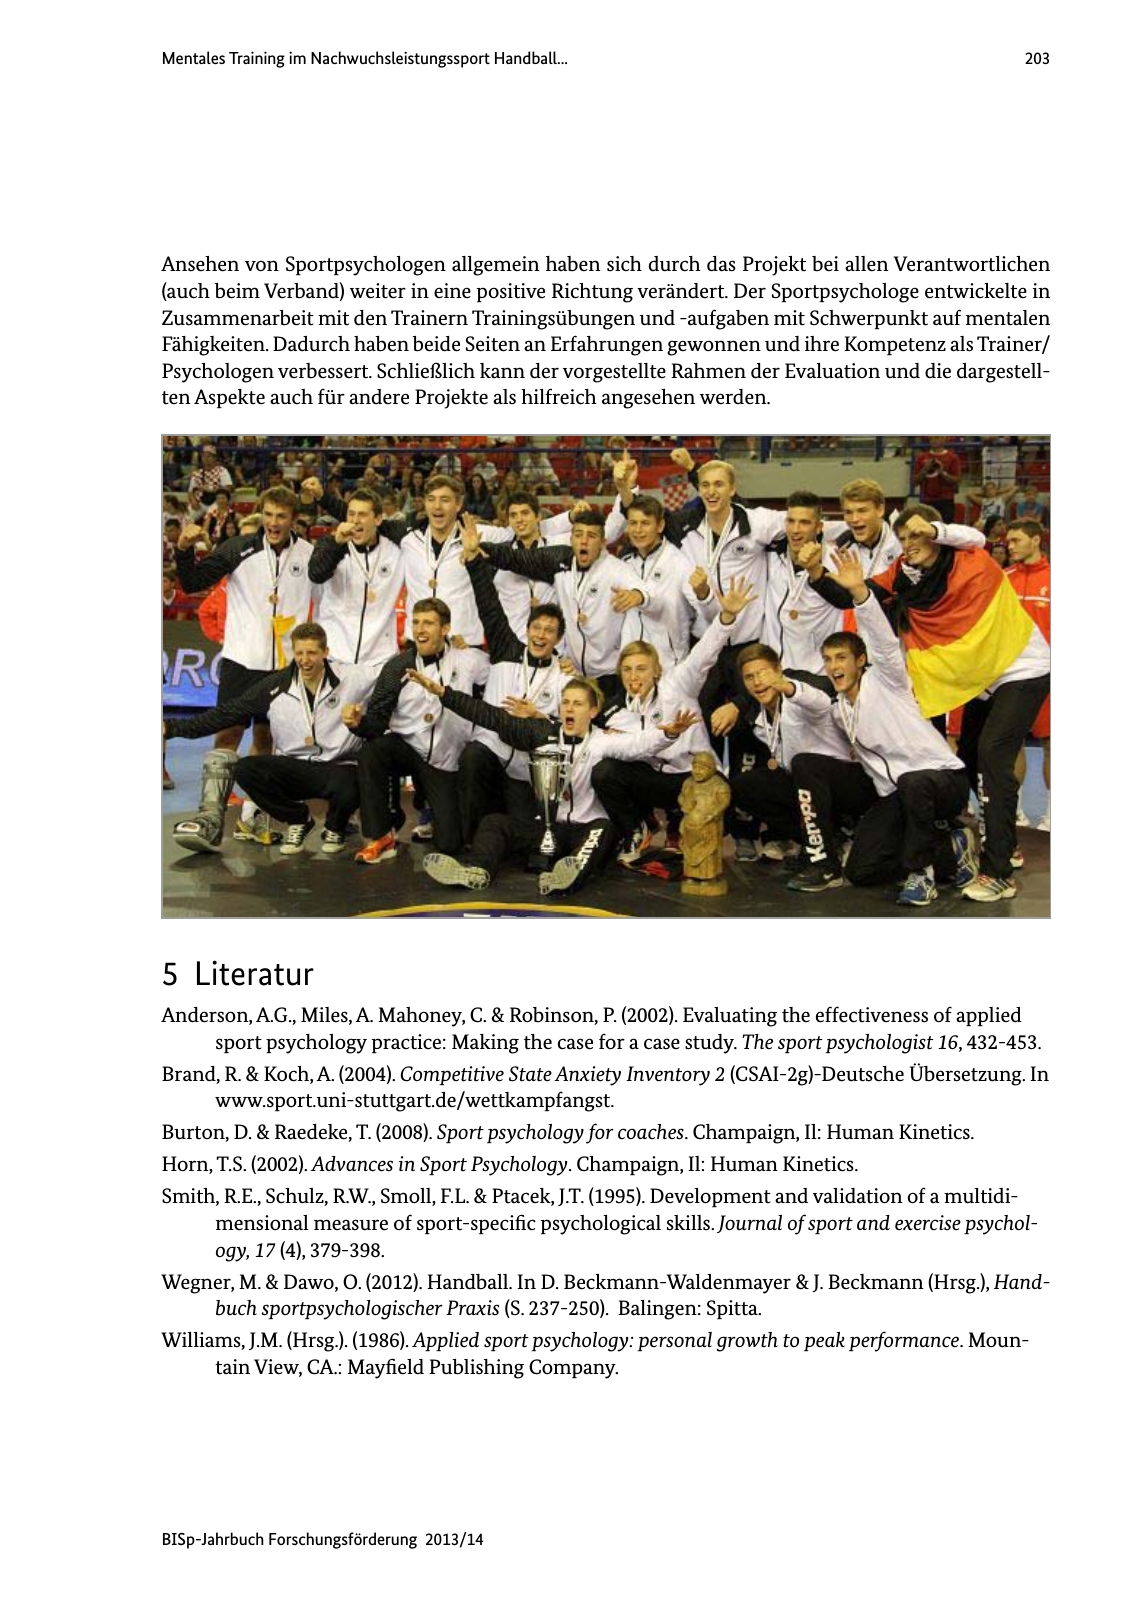 Vorschau BISp-Jahrbuch Forschungsförderung 2013/14 Seite 204